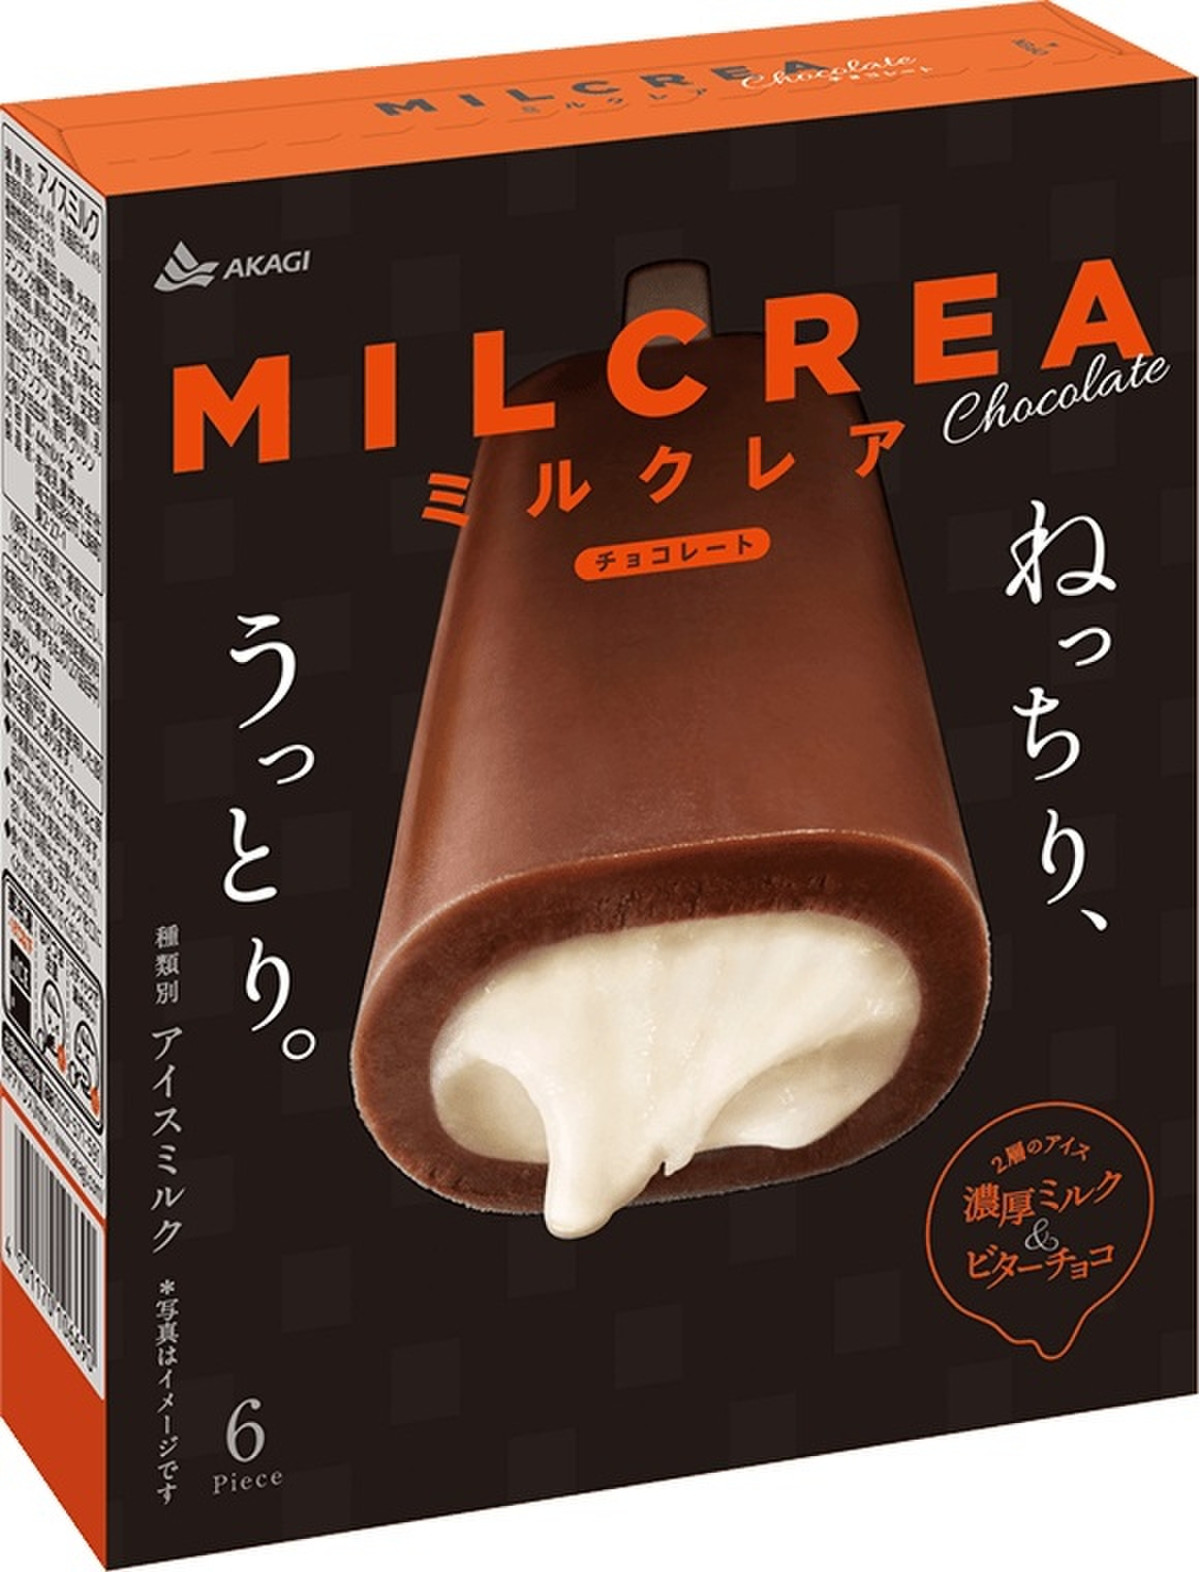 高評価 まったり濃厚 赤城 Milcrea チョコレート のクチコミ 評価 へもへもさん もぐナビ